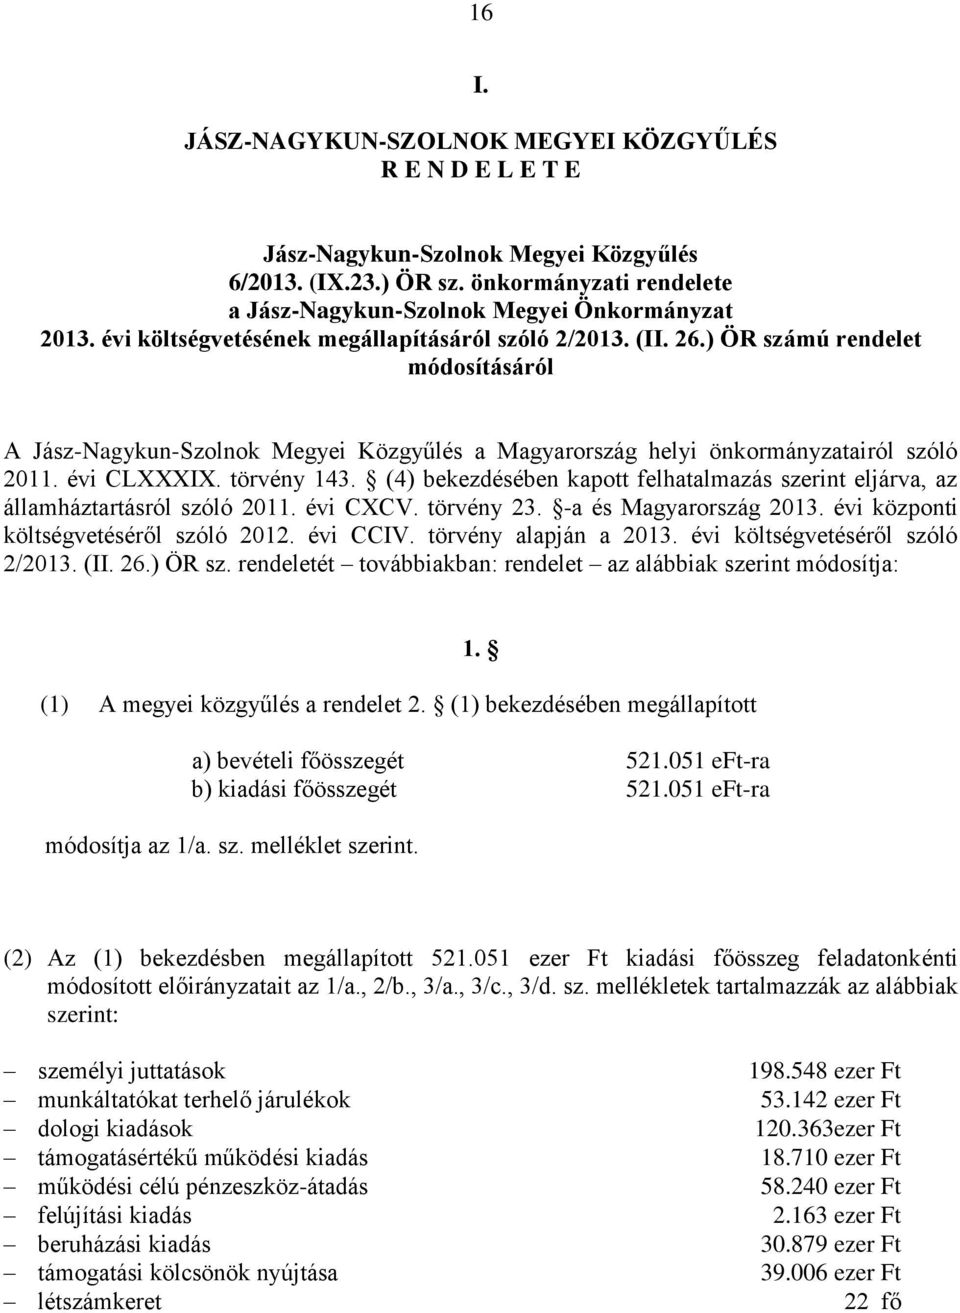 (4) bekezdésében kapott felhatalmazás szerint eljárva, az államháztartásról szóló 2011. évi CXCV. törvény 23. -a és Magyarország 2013. évi központi költségvetéséről szóló 2012. évi CCIV.